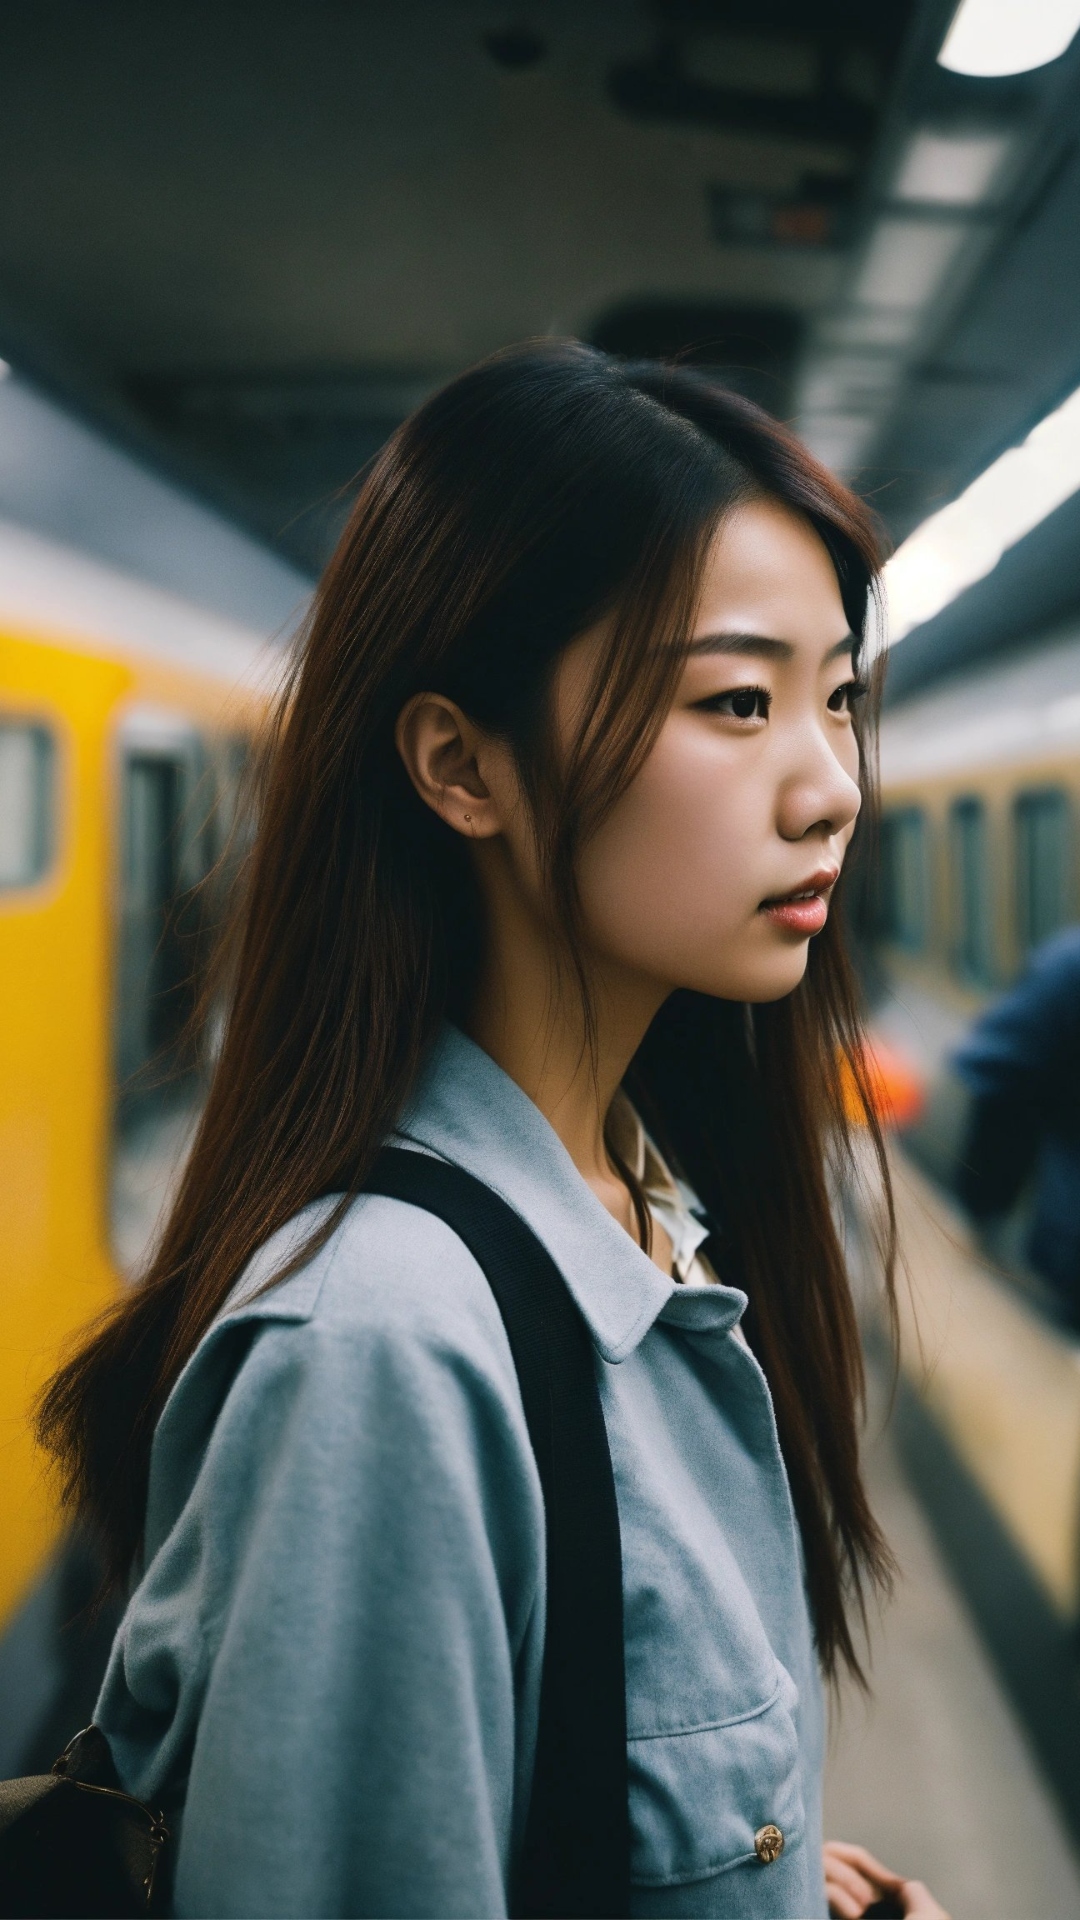 जापान सरकार का वो फैसला, एक लड़की के लिए चलाई 3 साल ट्रेन